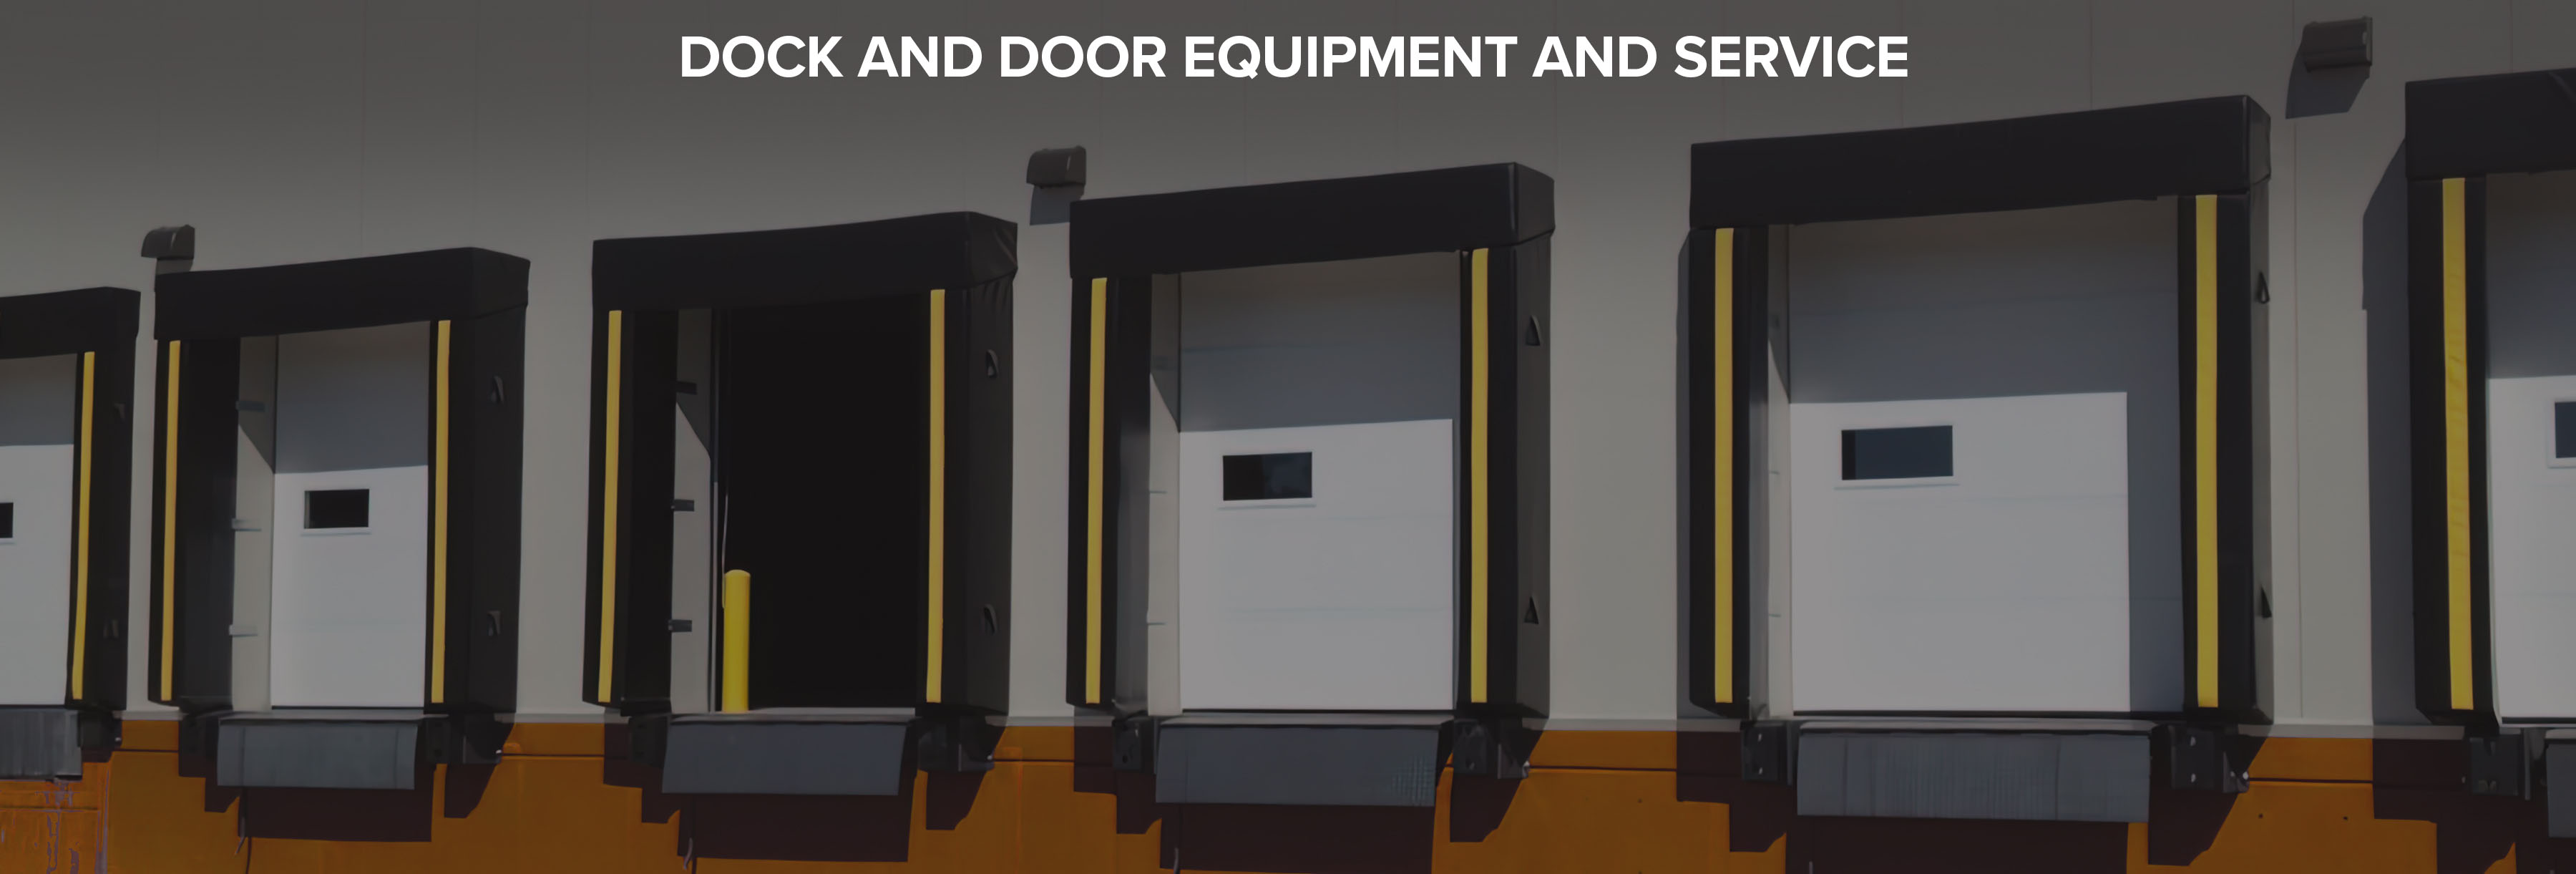 Dock & Door Equipment and Service